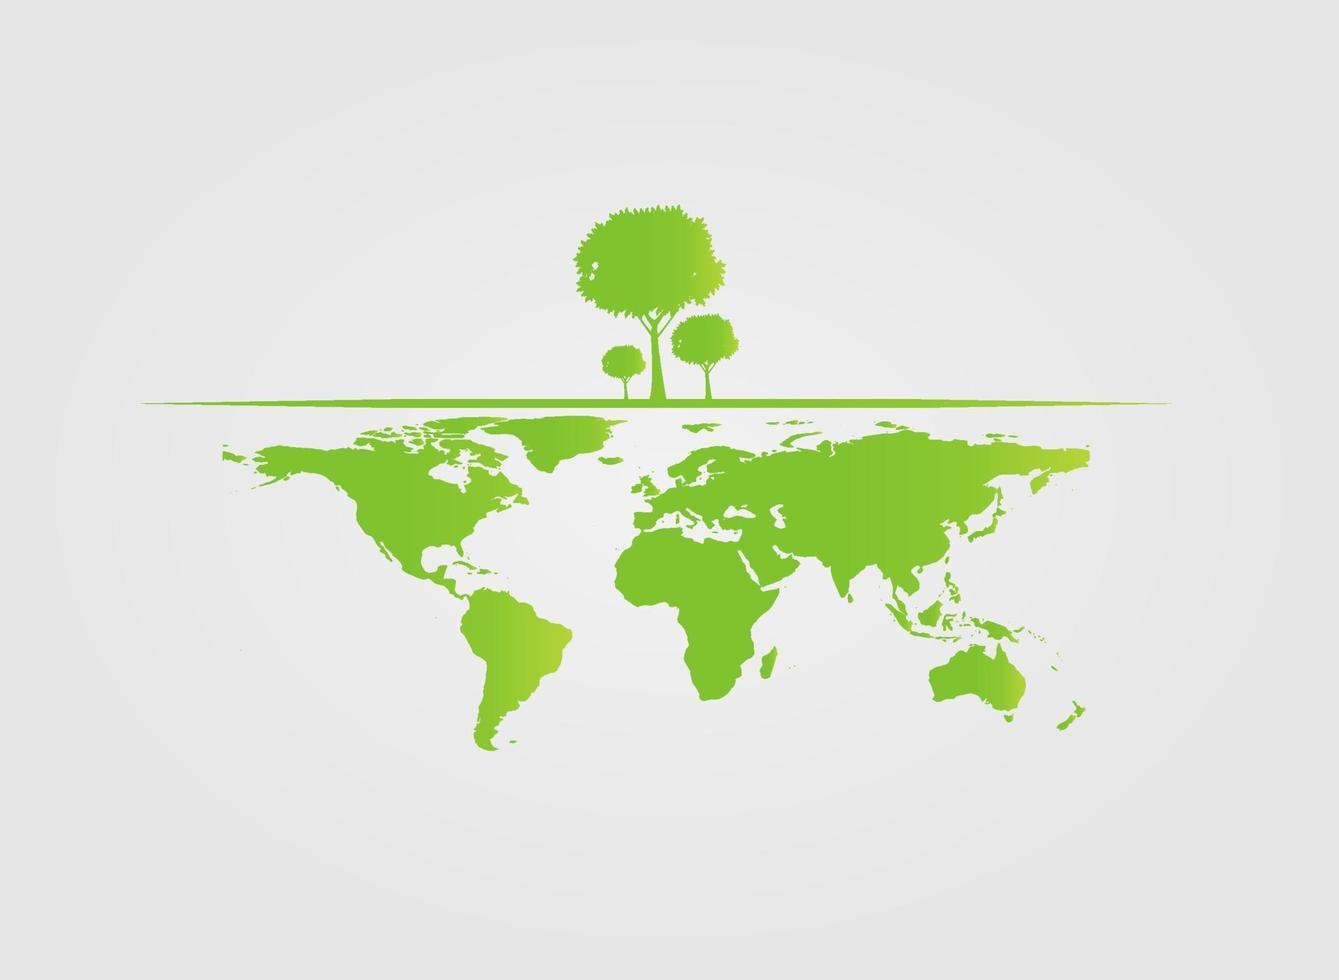 ecologia, albero sulla terra le città aiutano il mondo con idee di concetto ecologico. illustrazione di vettore